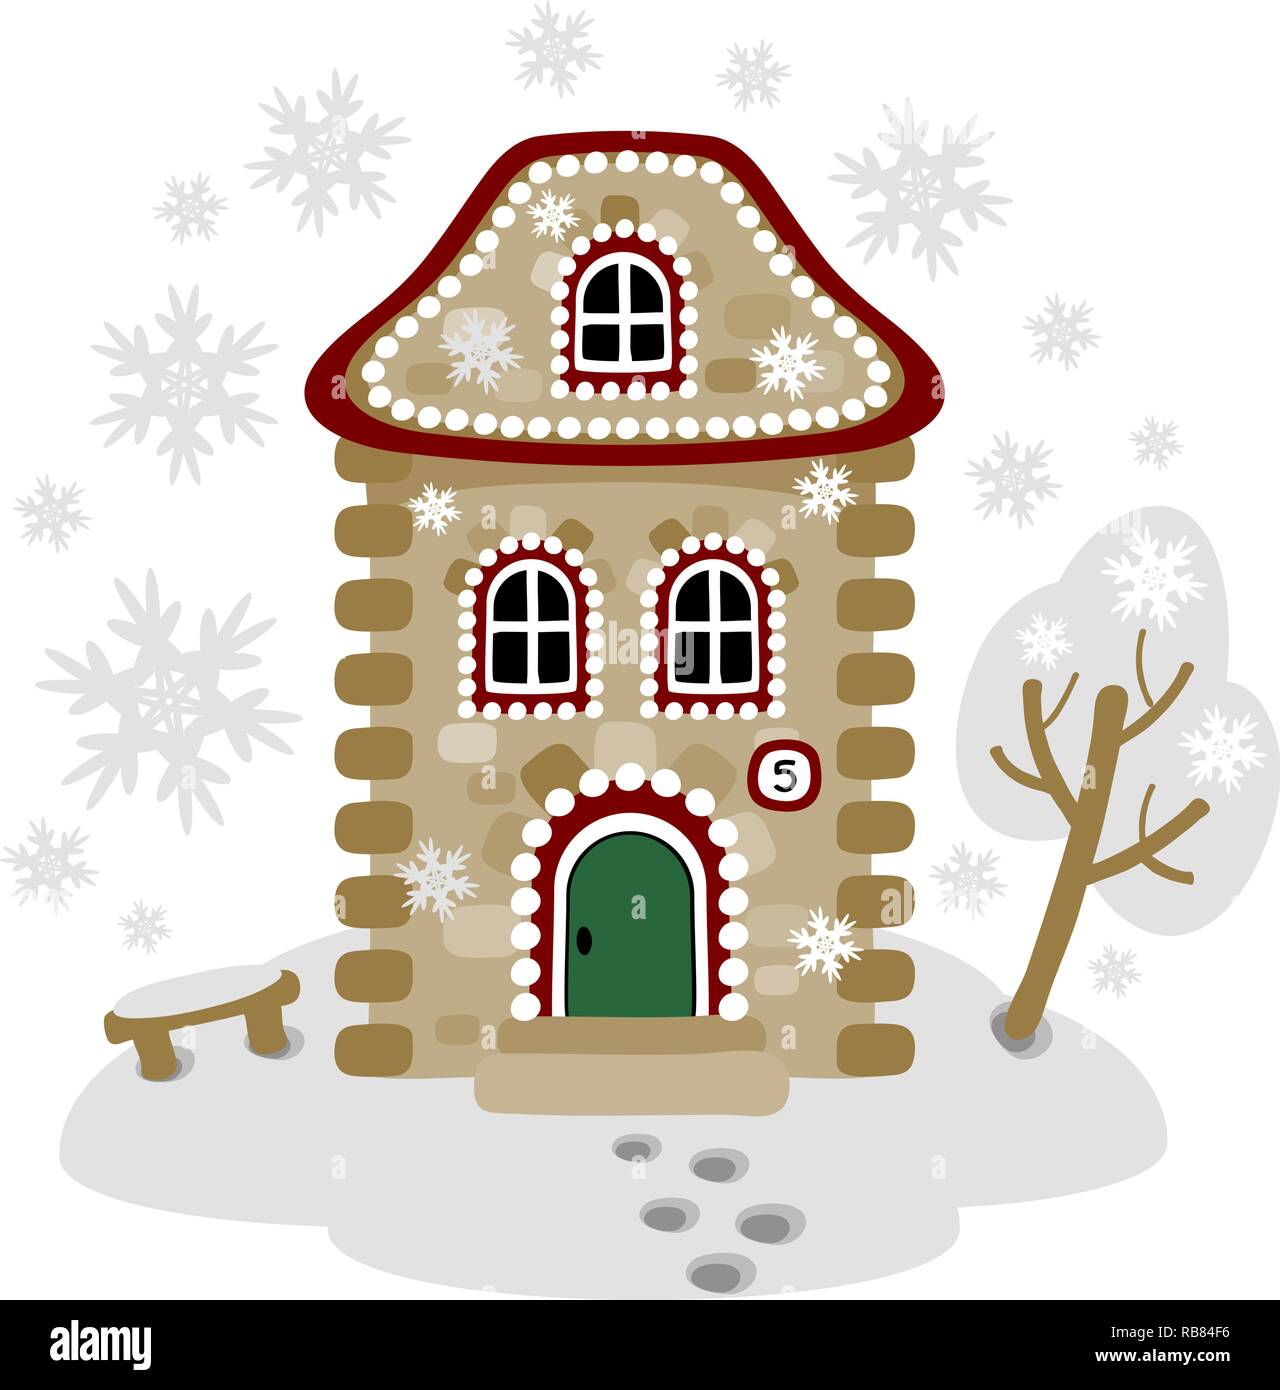 Carte d'hiver avec gingerbread house. Image vectorielle. Eps 10 Illustration de Vecteur